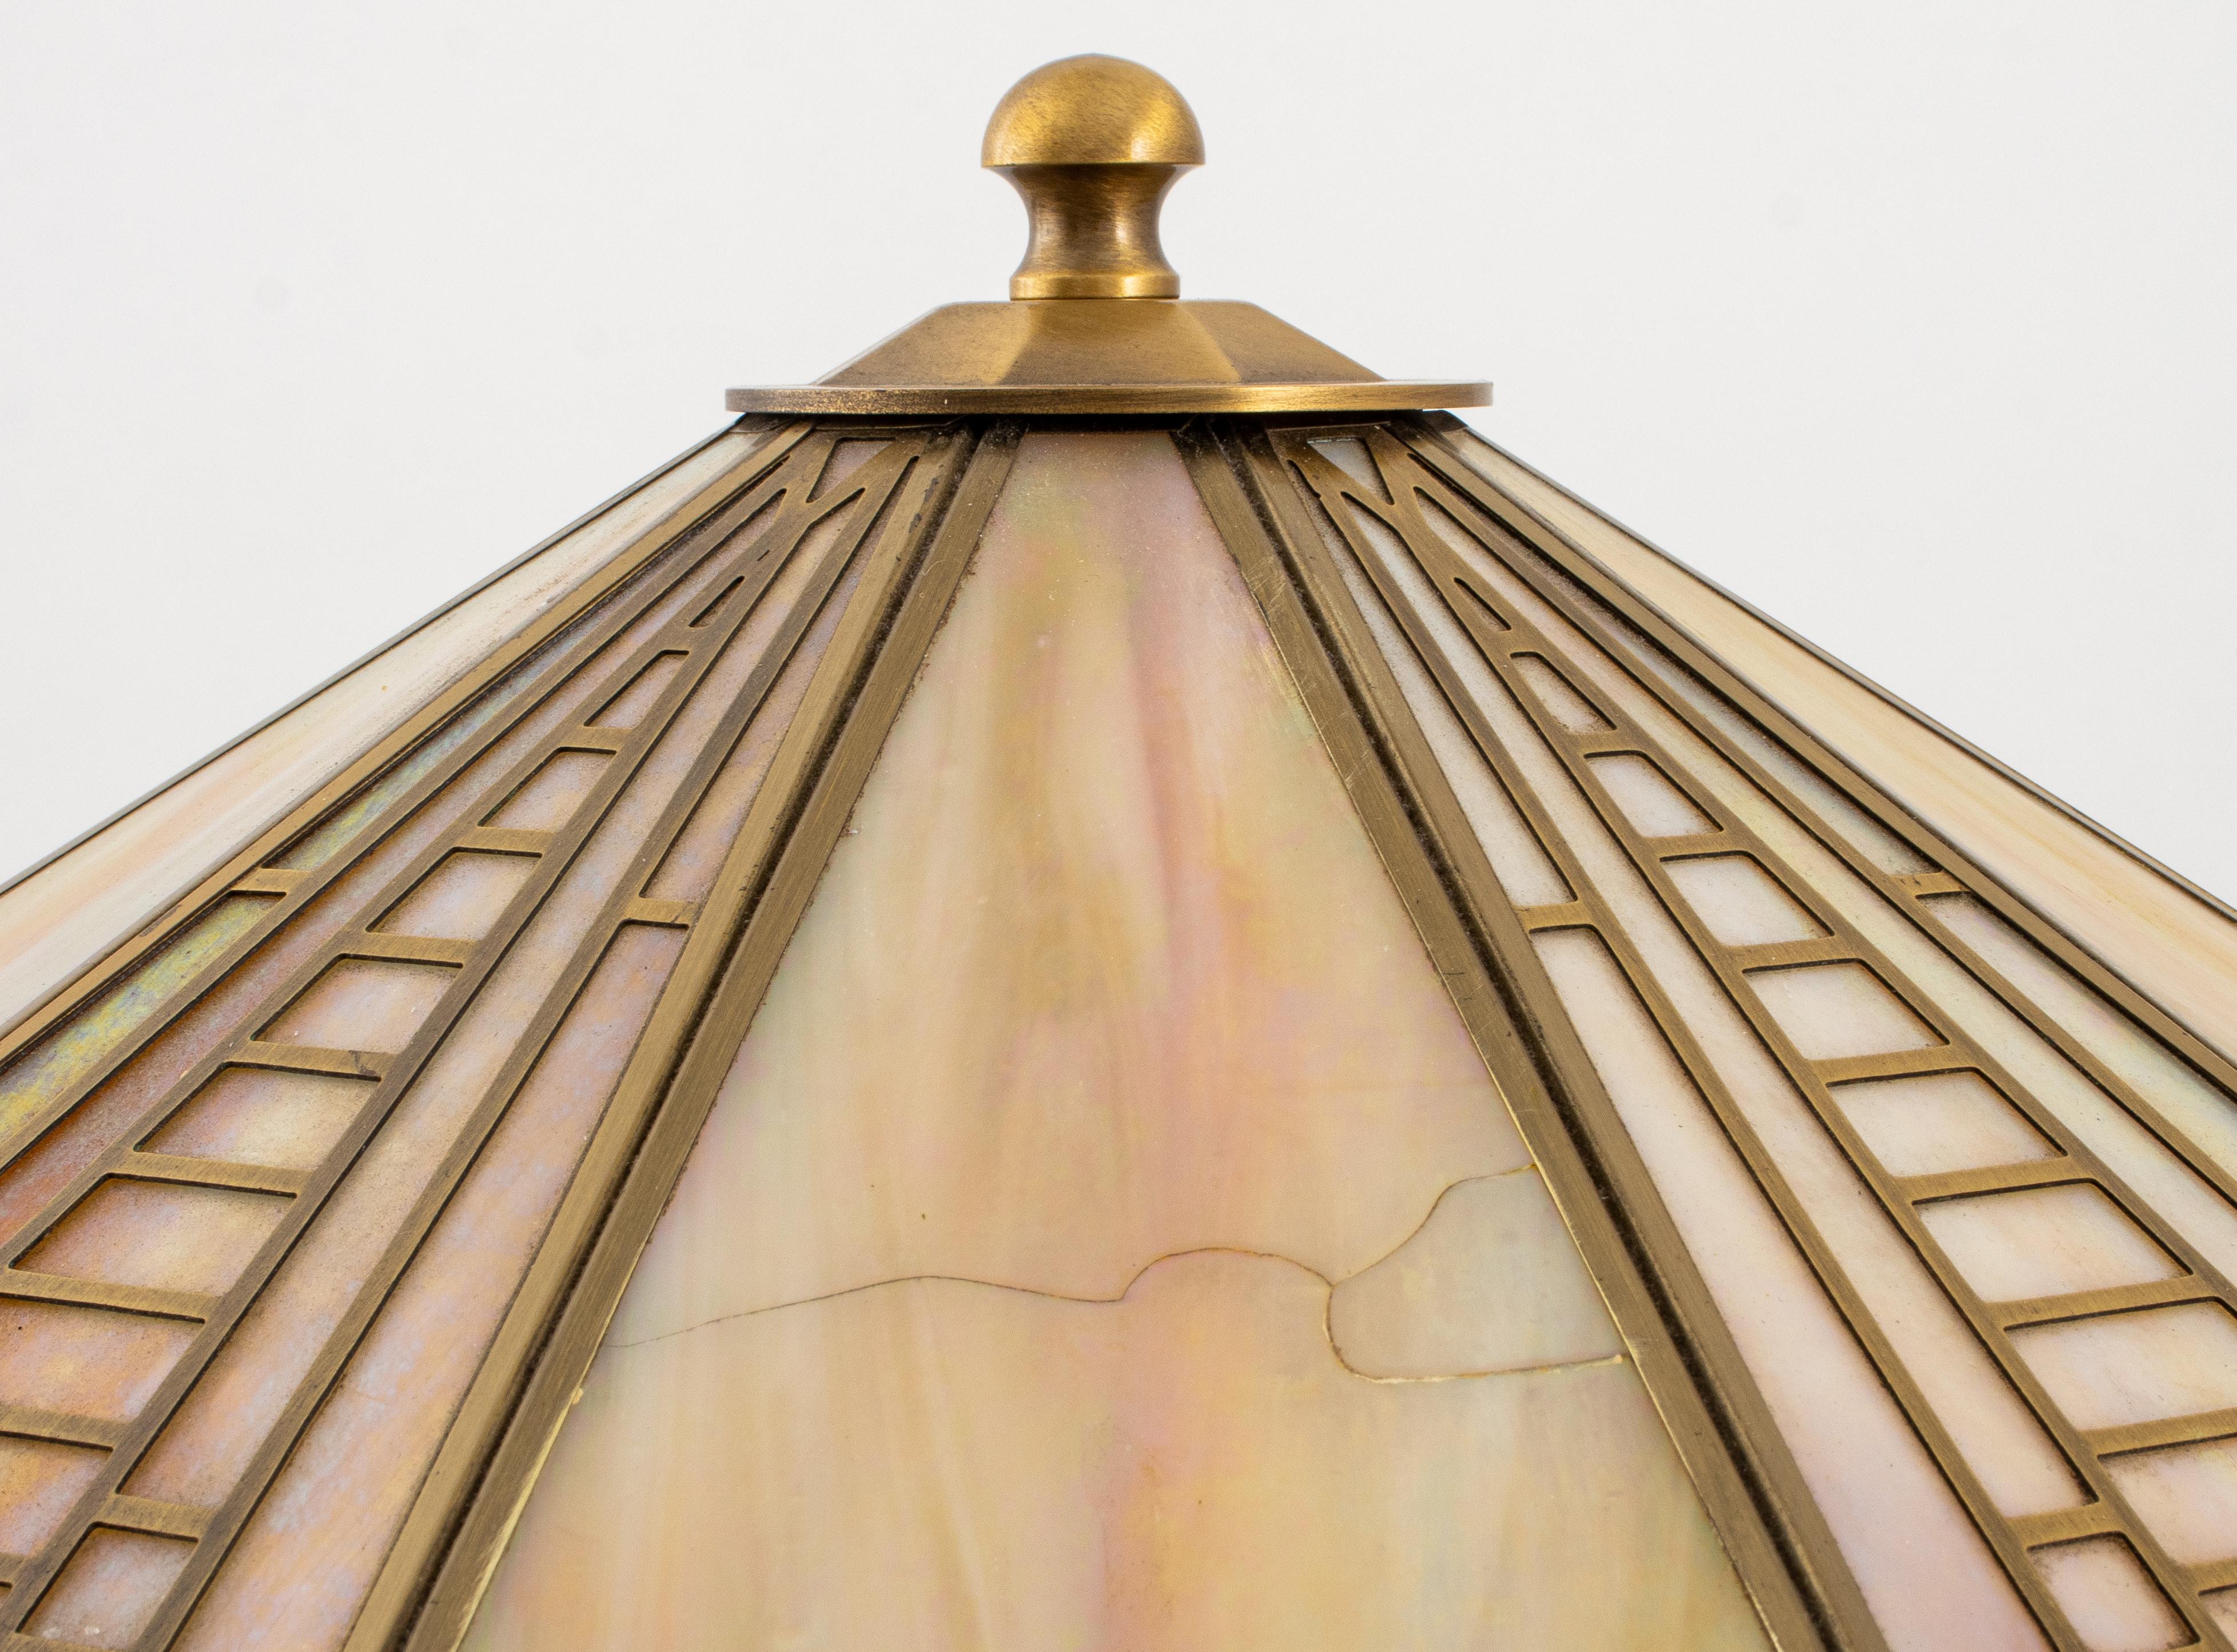 Lampe de table Frederick Raymond Arts and Crafts Slag Glass avec quatre ampoules, l'abat-jour décagonal et la base rectangulaire avec des inserts en verre irisé et un cadre en métal doré avec un design géométrique dans le style Arts and Crafts /